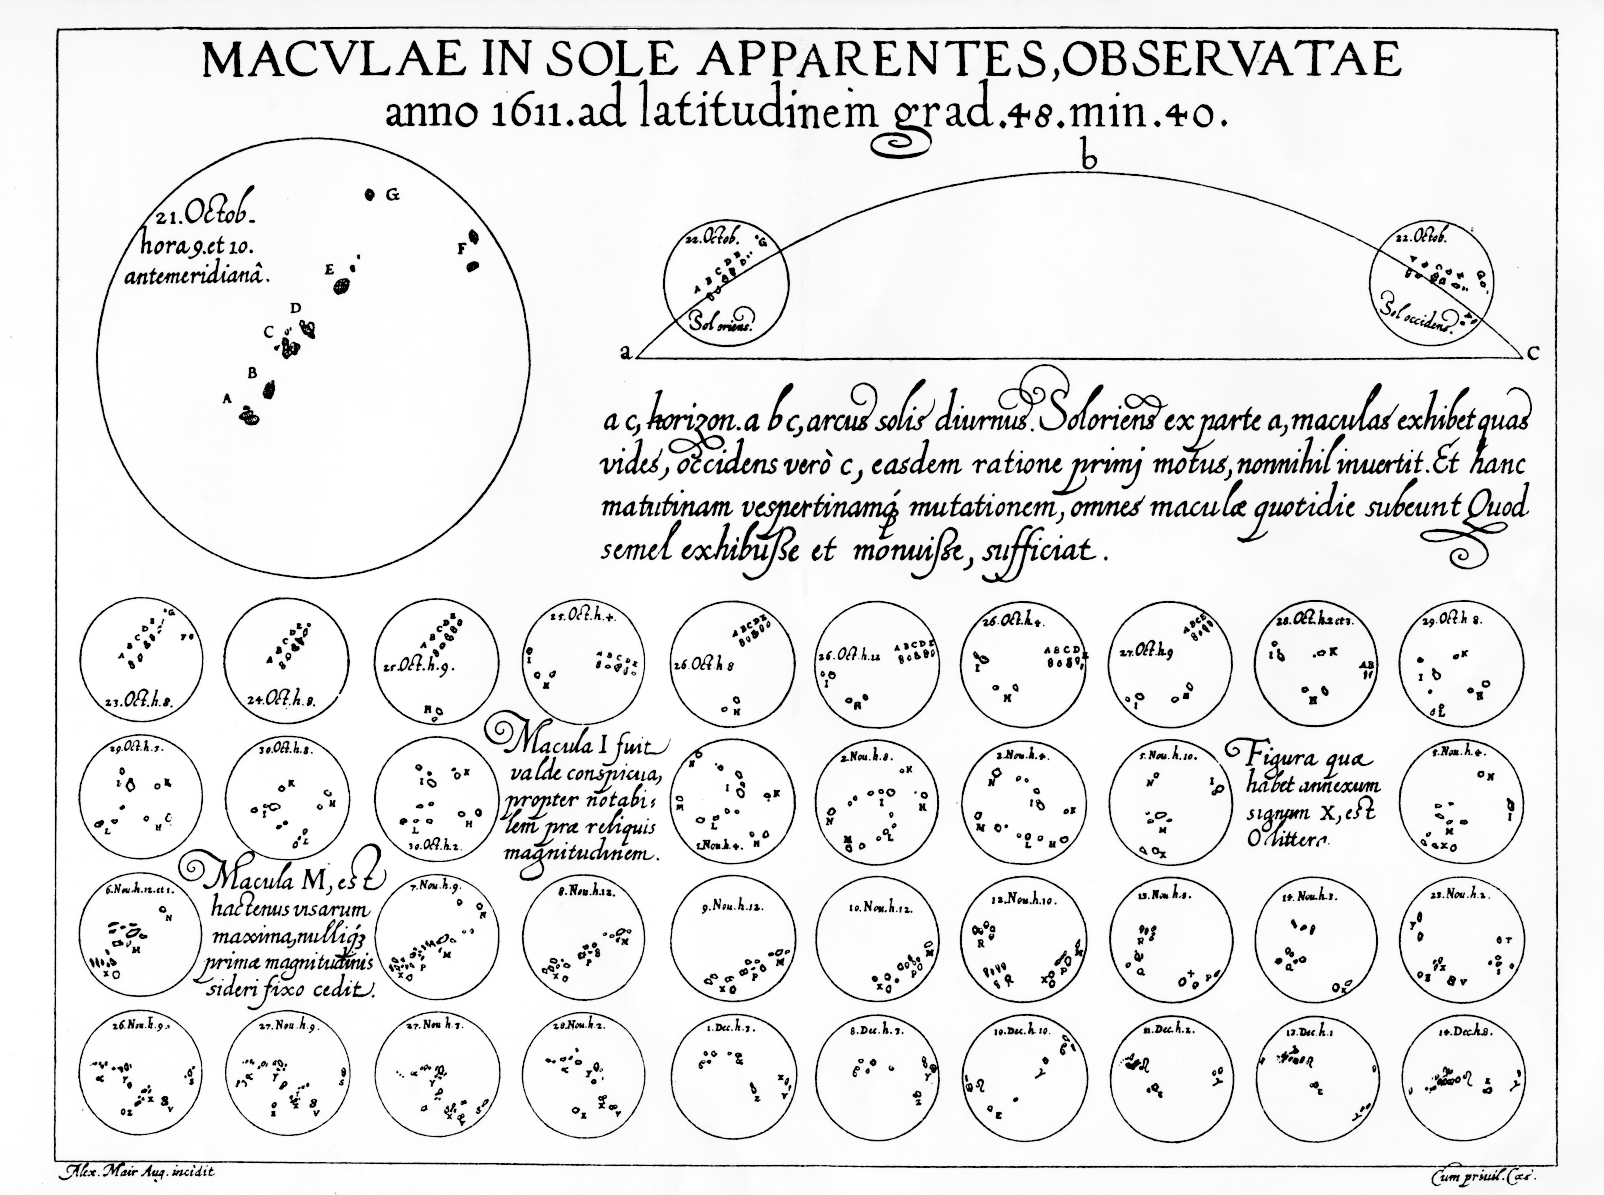 Macvlae in sole apparentes observatae, by Christopher Scheiner. 1612.